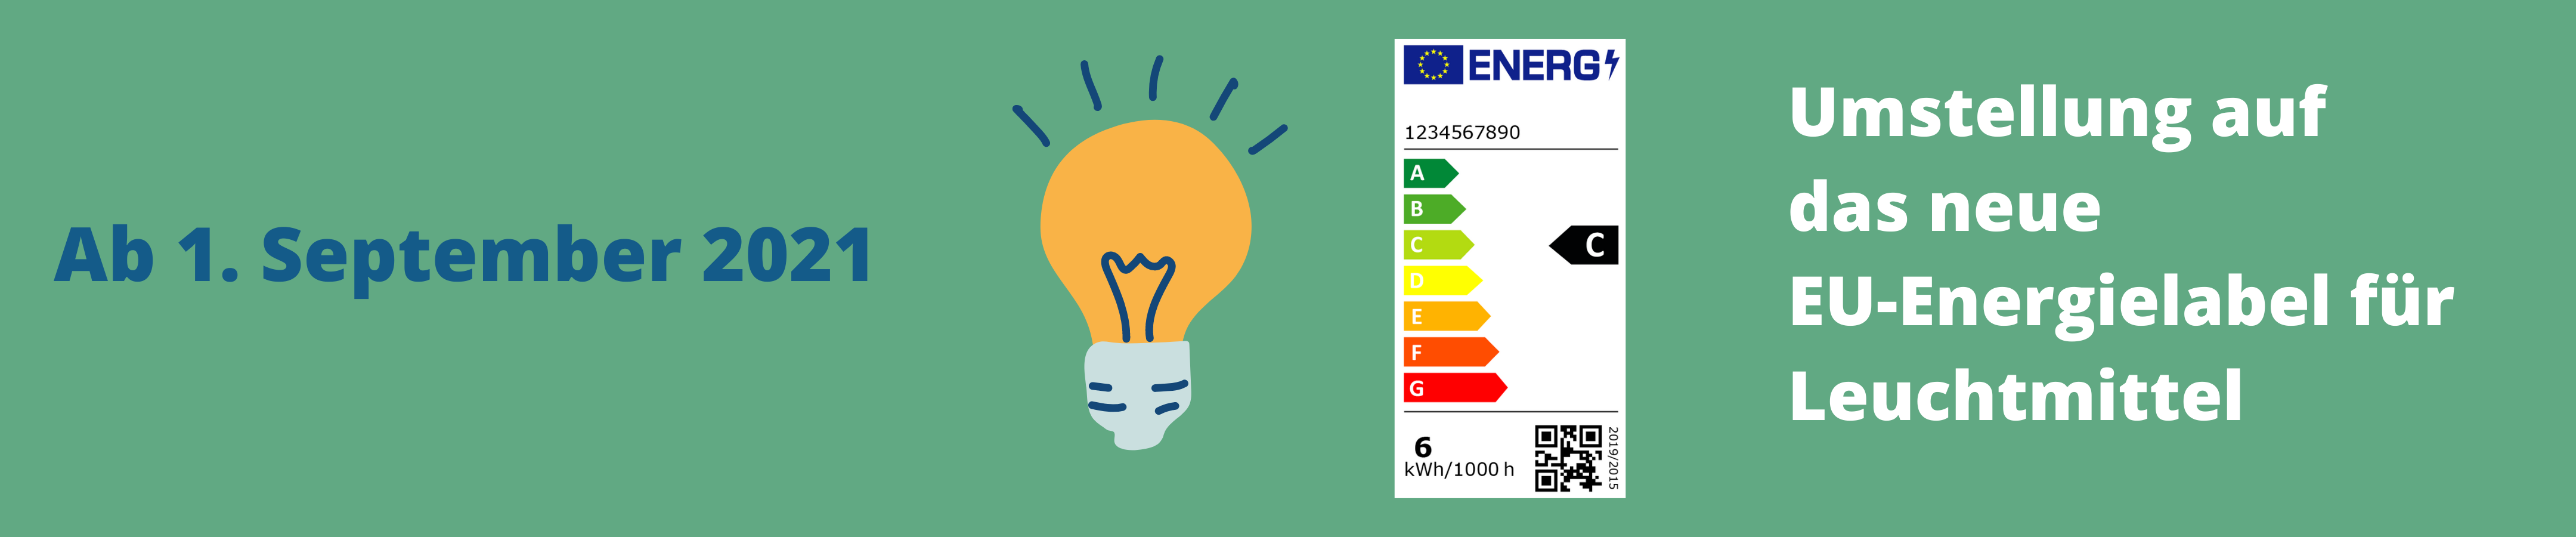 Umstellung auf das neue EU-Energielabel für Leuchtmittel ab 1. September 2021